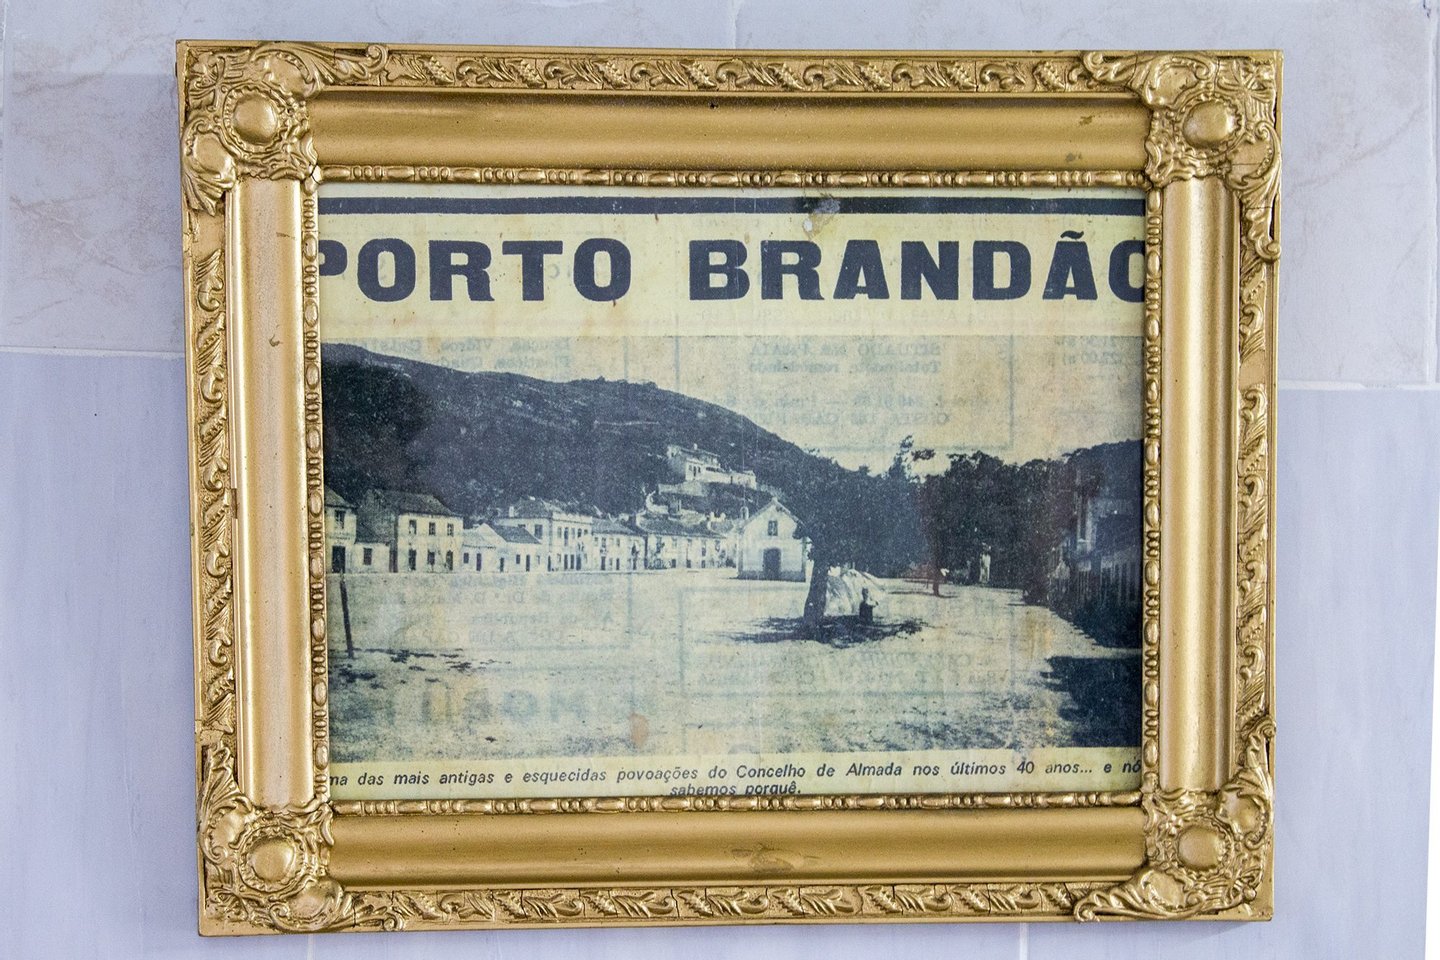 2016, Joao Pedro Pincha, ponte 25 de Abril, Lisboa, Rio Tejo, porto brandÃ£o, 